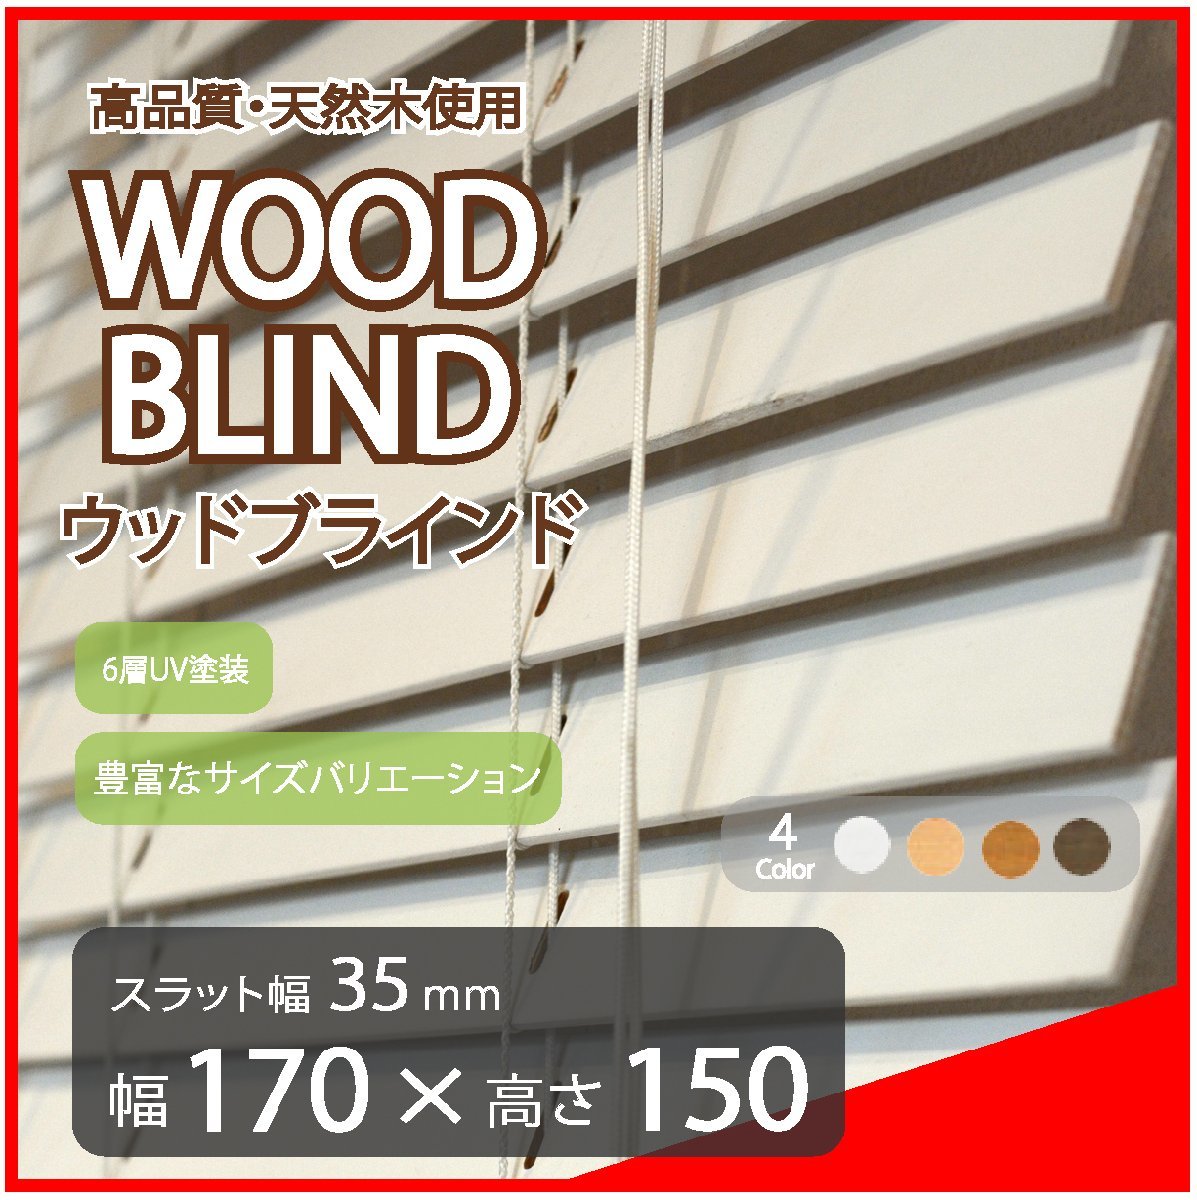 高品質 ウッドブラインド 木製 ブラインド 既成サイズ スラット(羽根)幅35mm 幅170cm×高さ150cm ホワイト